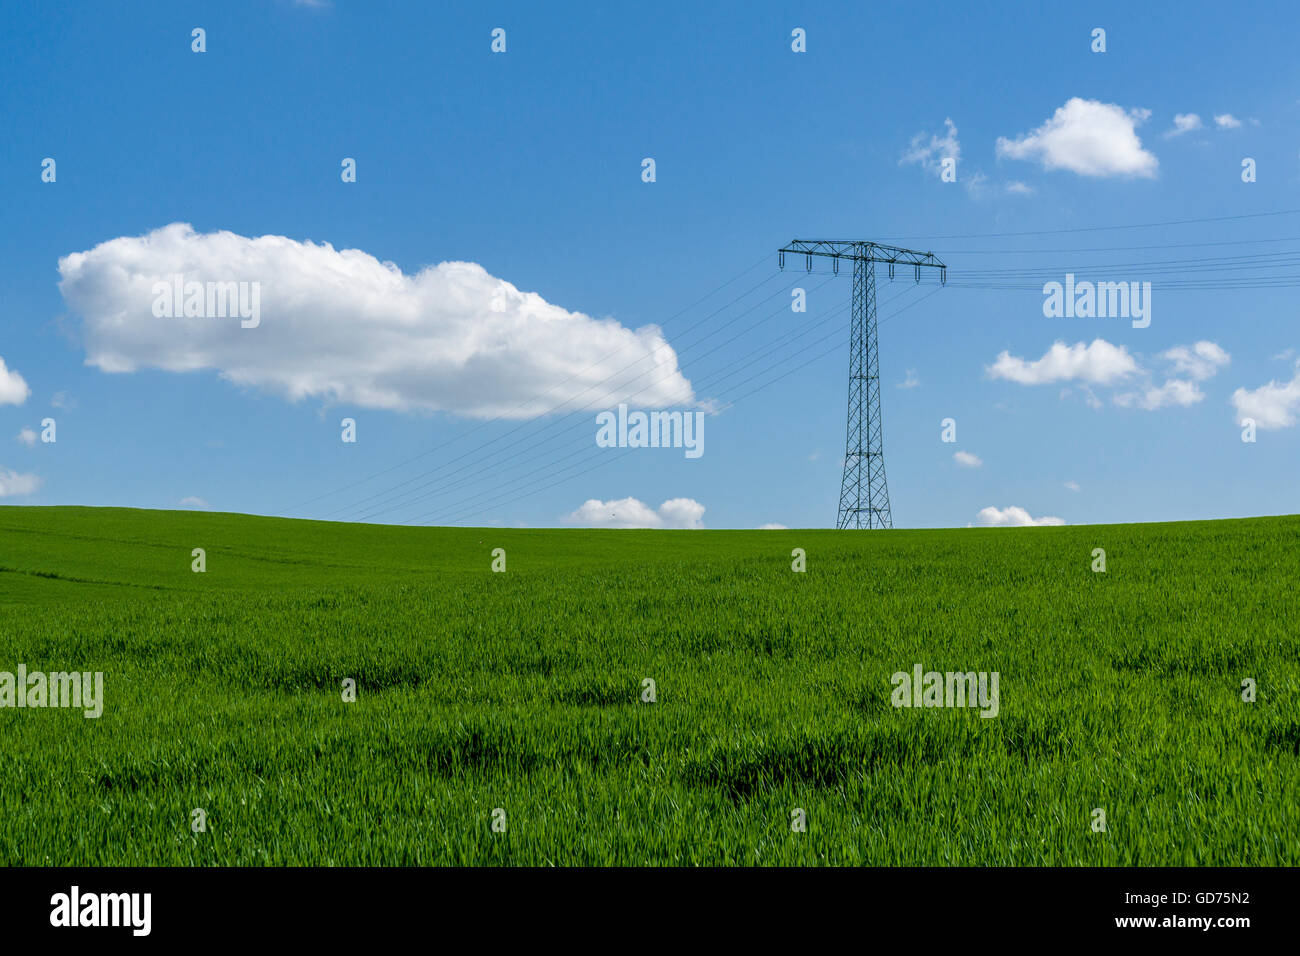 Agrarlandschaft mit obenliegenden Stromleitungen, grünen Wiesen und blauen Wolkenhimmel, Cunnersdorf, Sachsen, Deutschland Stockfoto